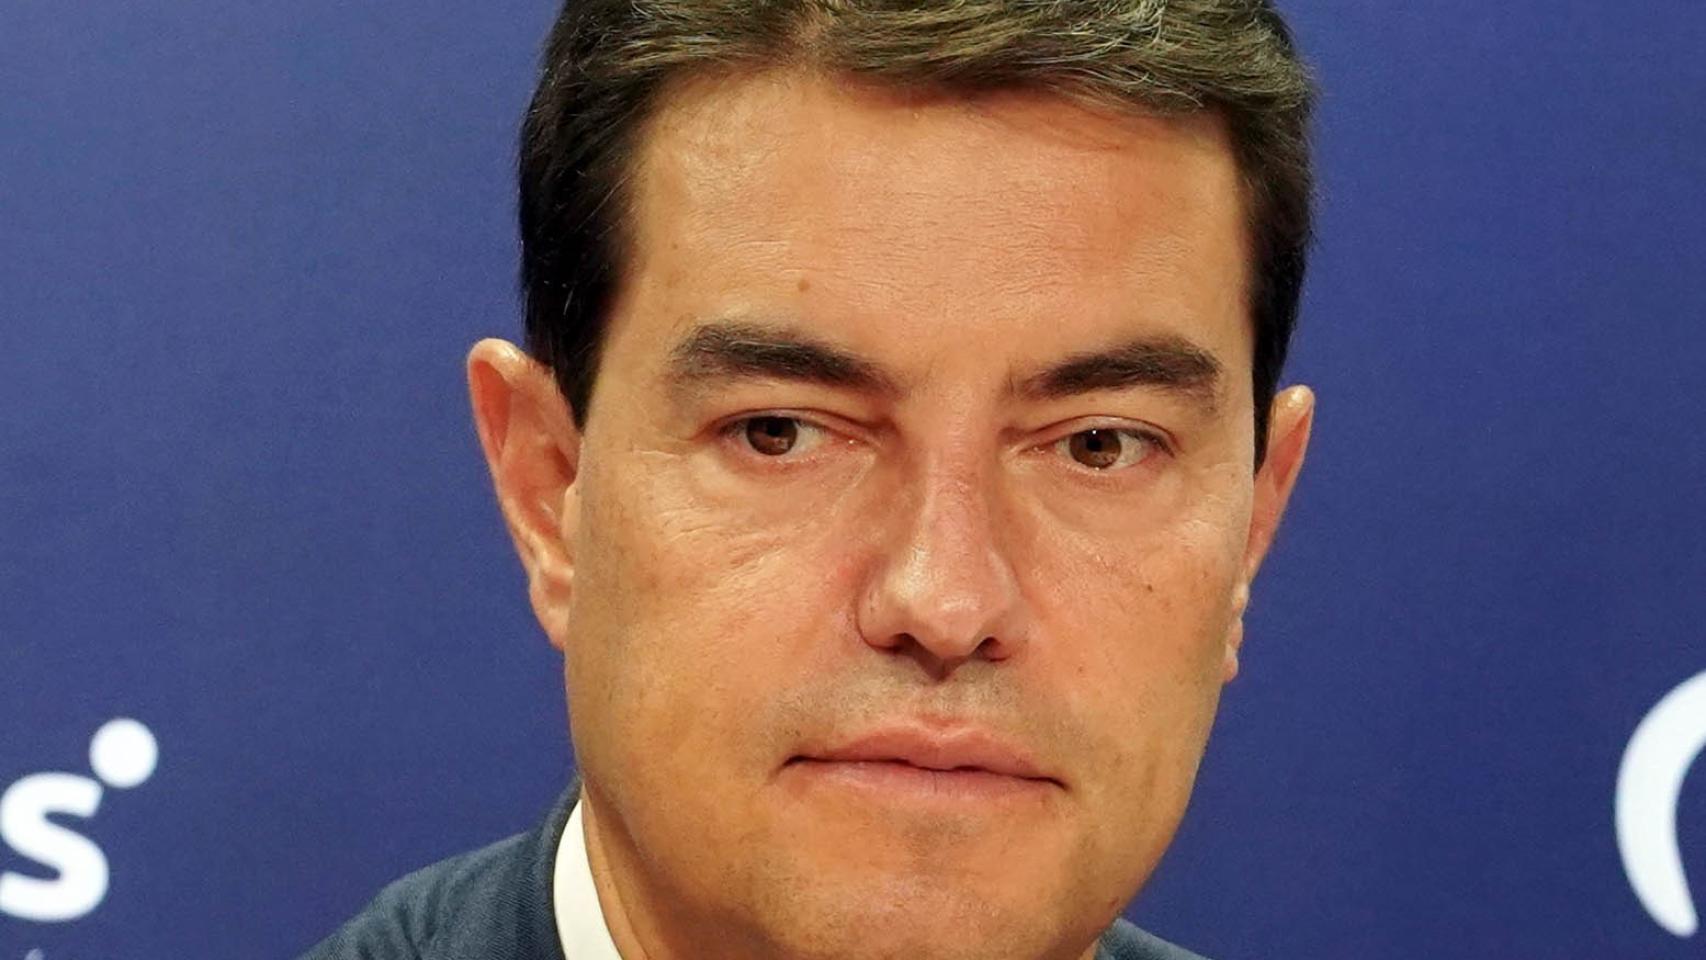 Ángel Ibáñez